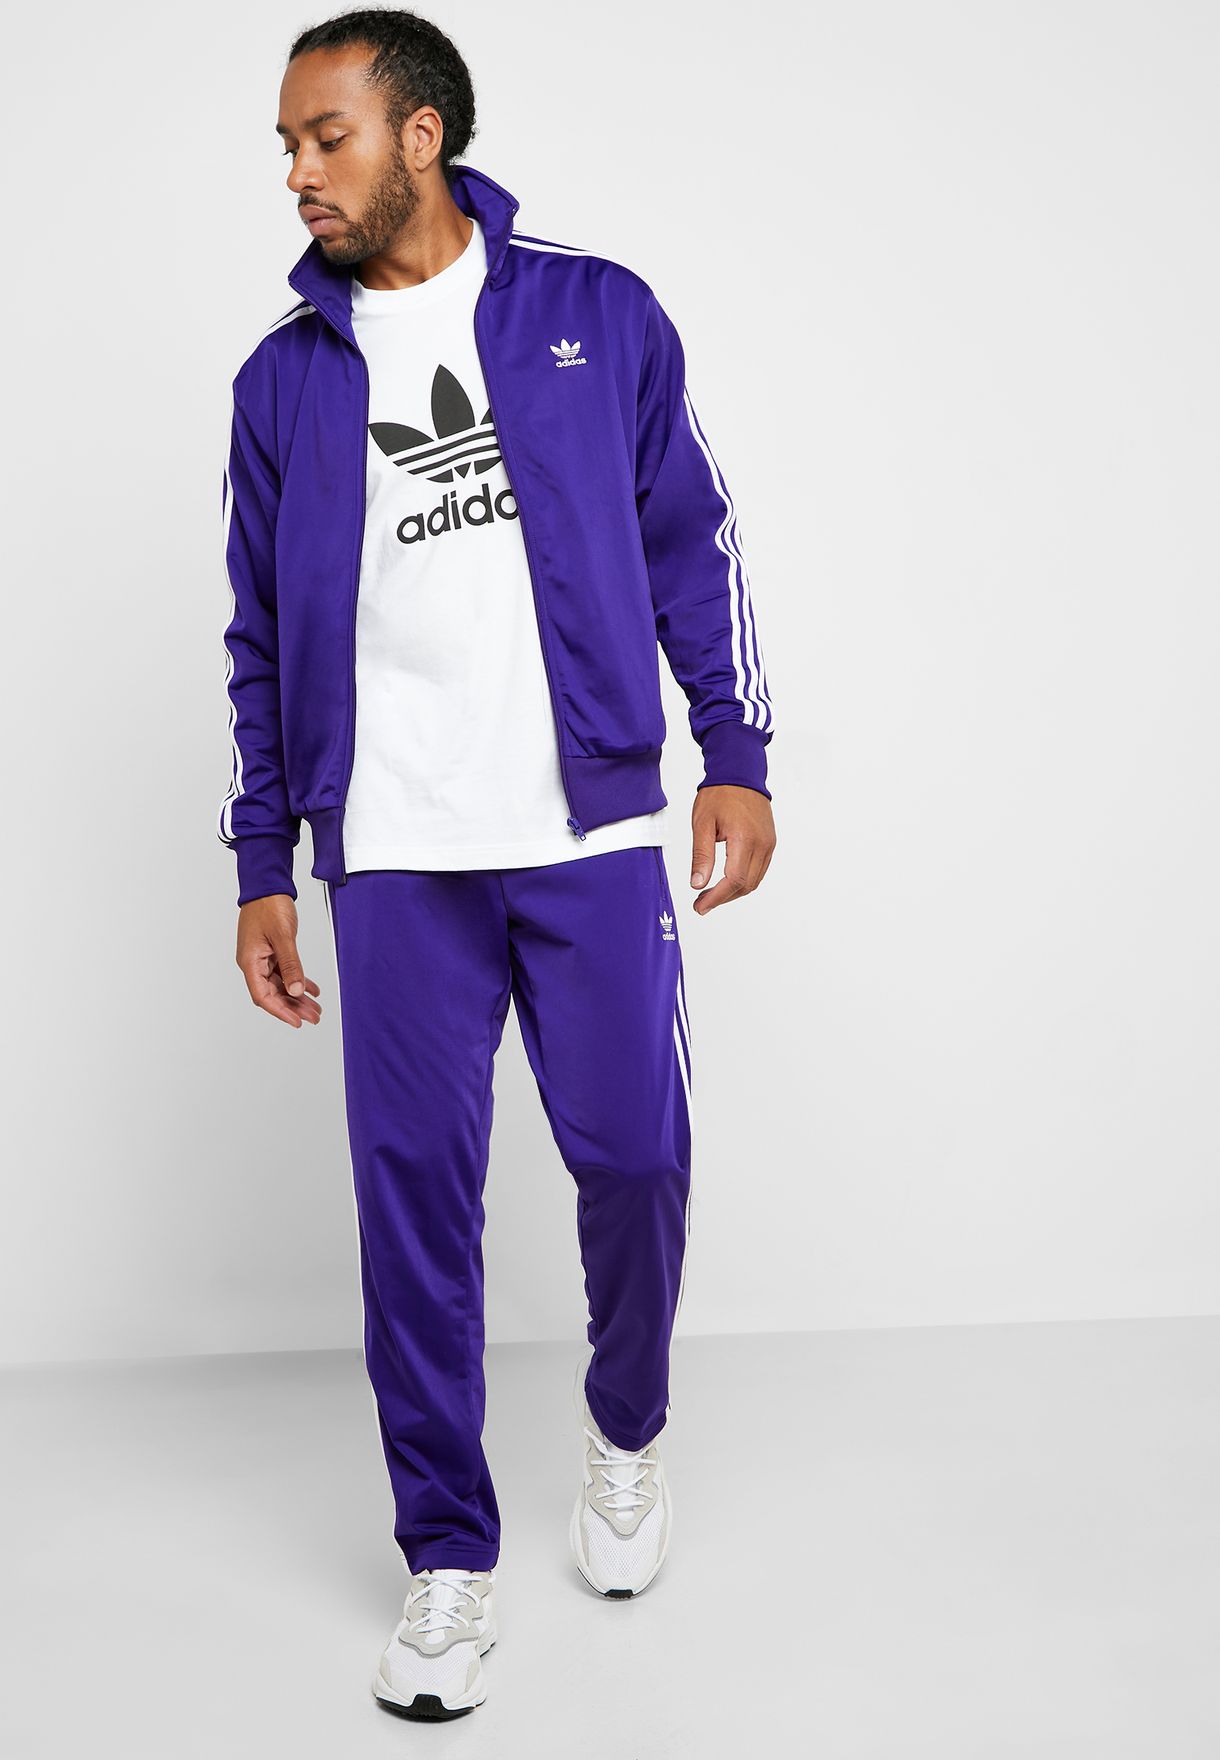 purple adidas tracksuit, OFF 73%,Free 